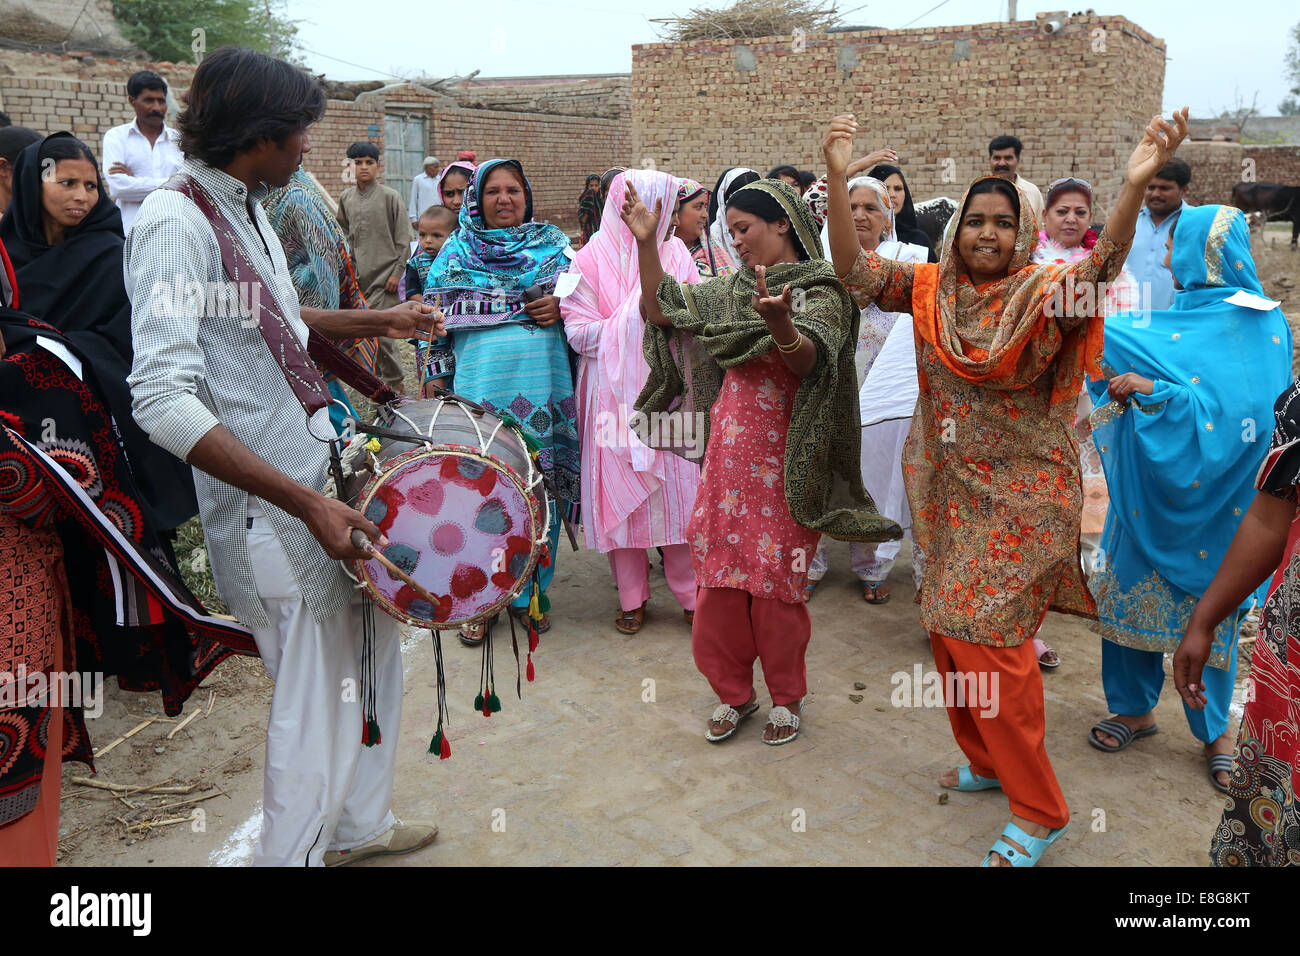 Les femmes habillés traditionnels colorés dansant dans un village près de Faisalabad, Pakistan Banque D'Images